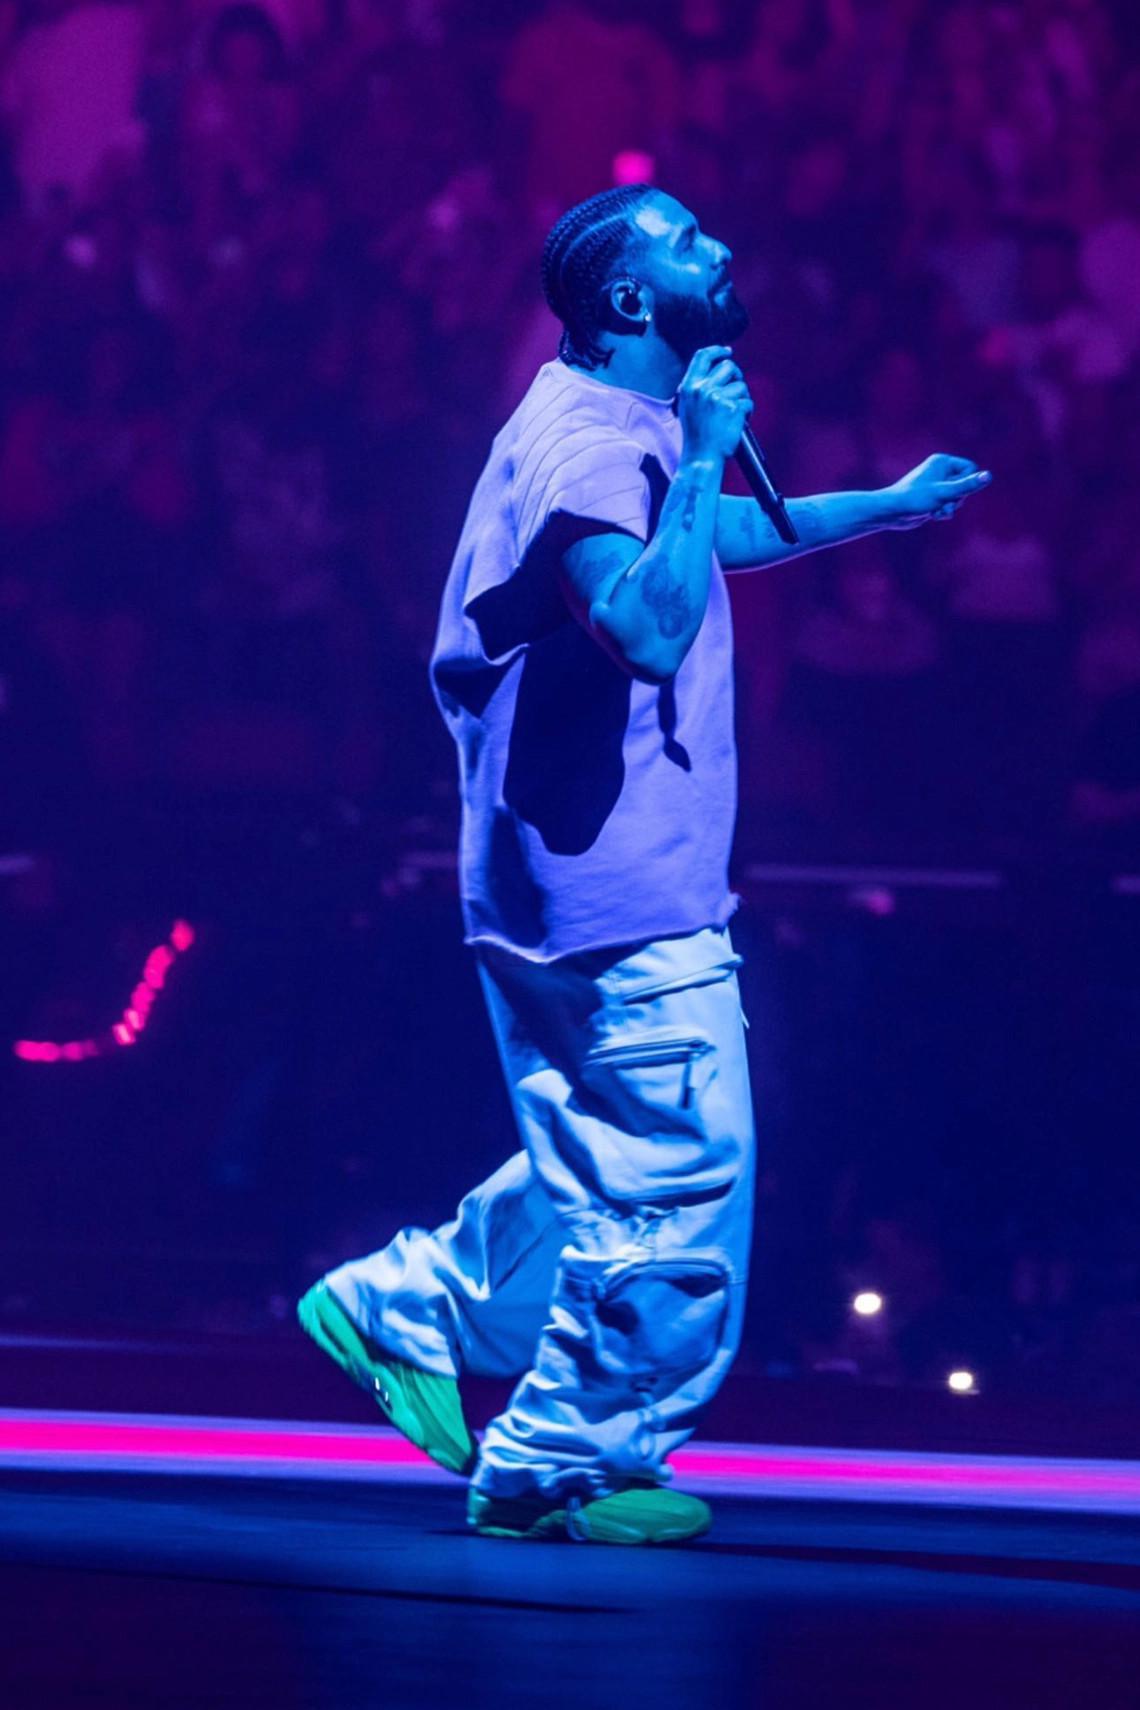 Drake présente la Nike NOCTA Hot Step 2 lors de la tournée It's All A Blur